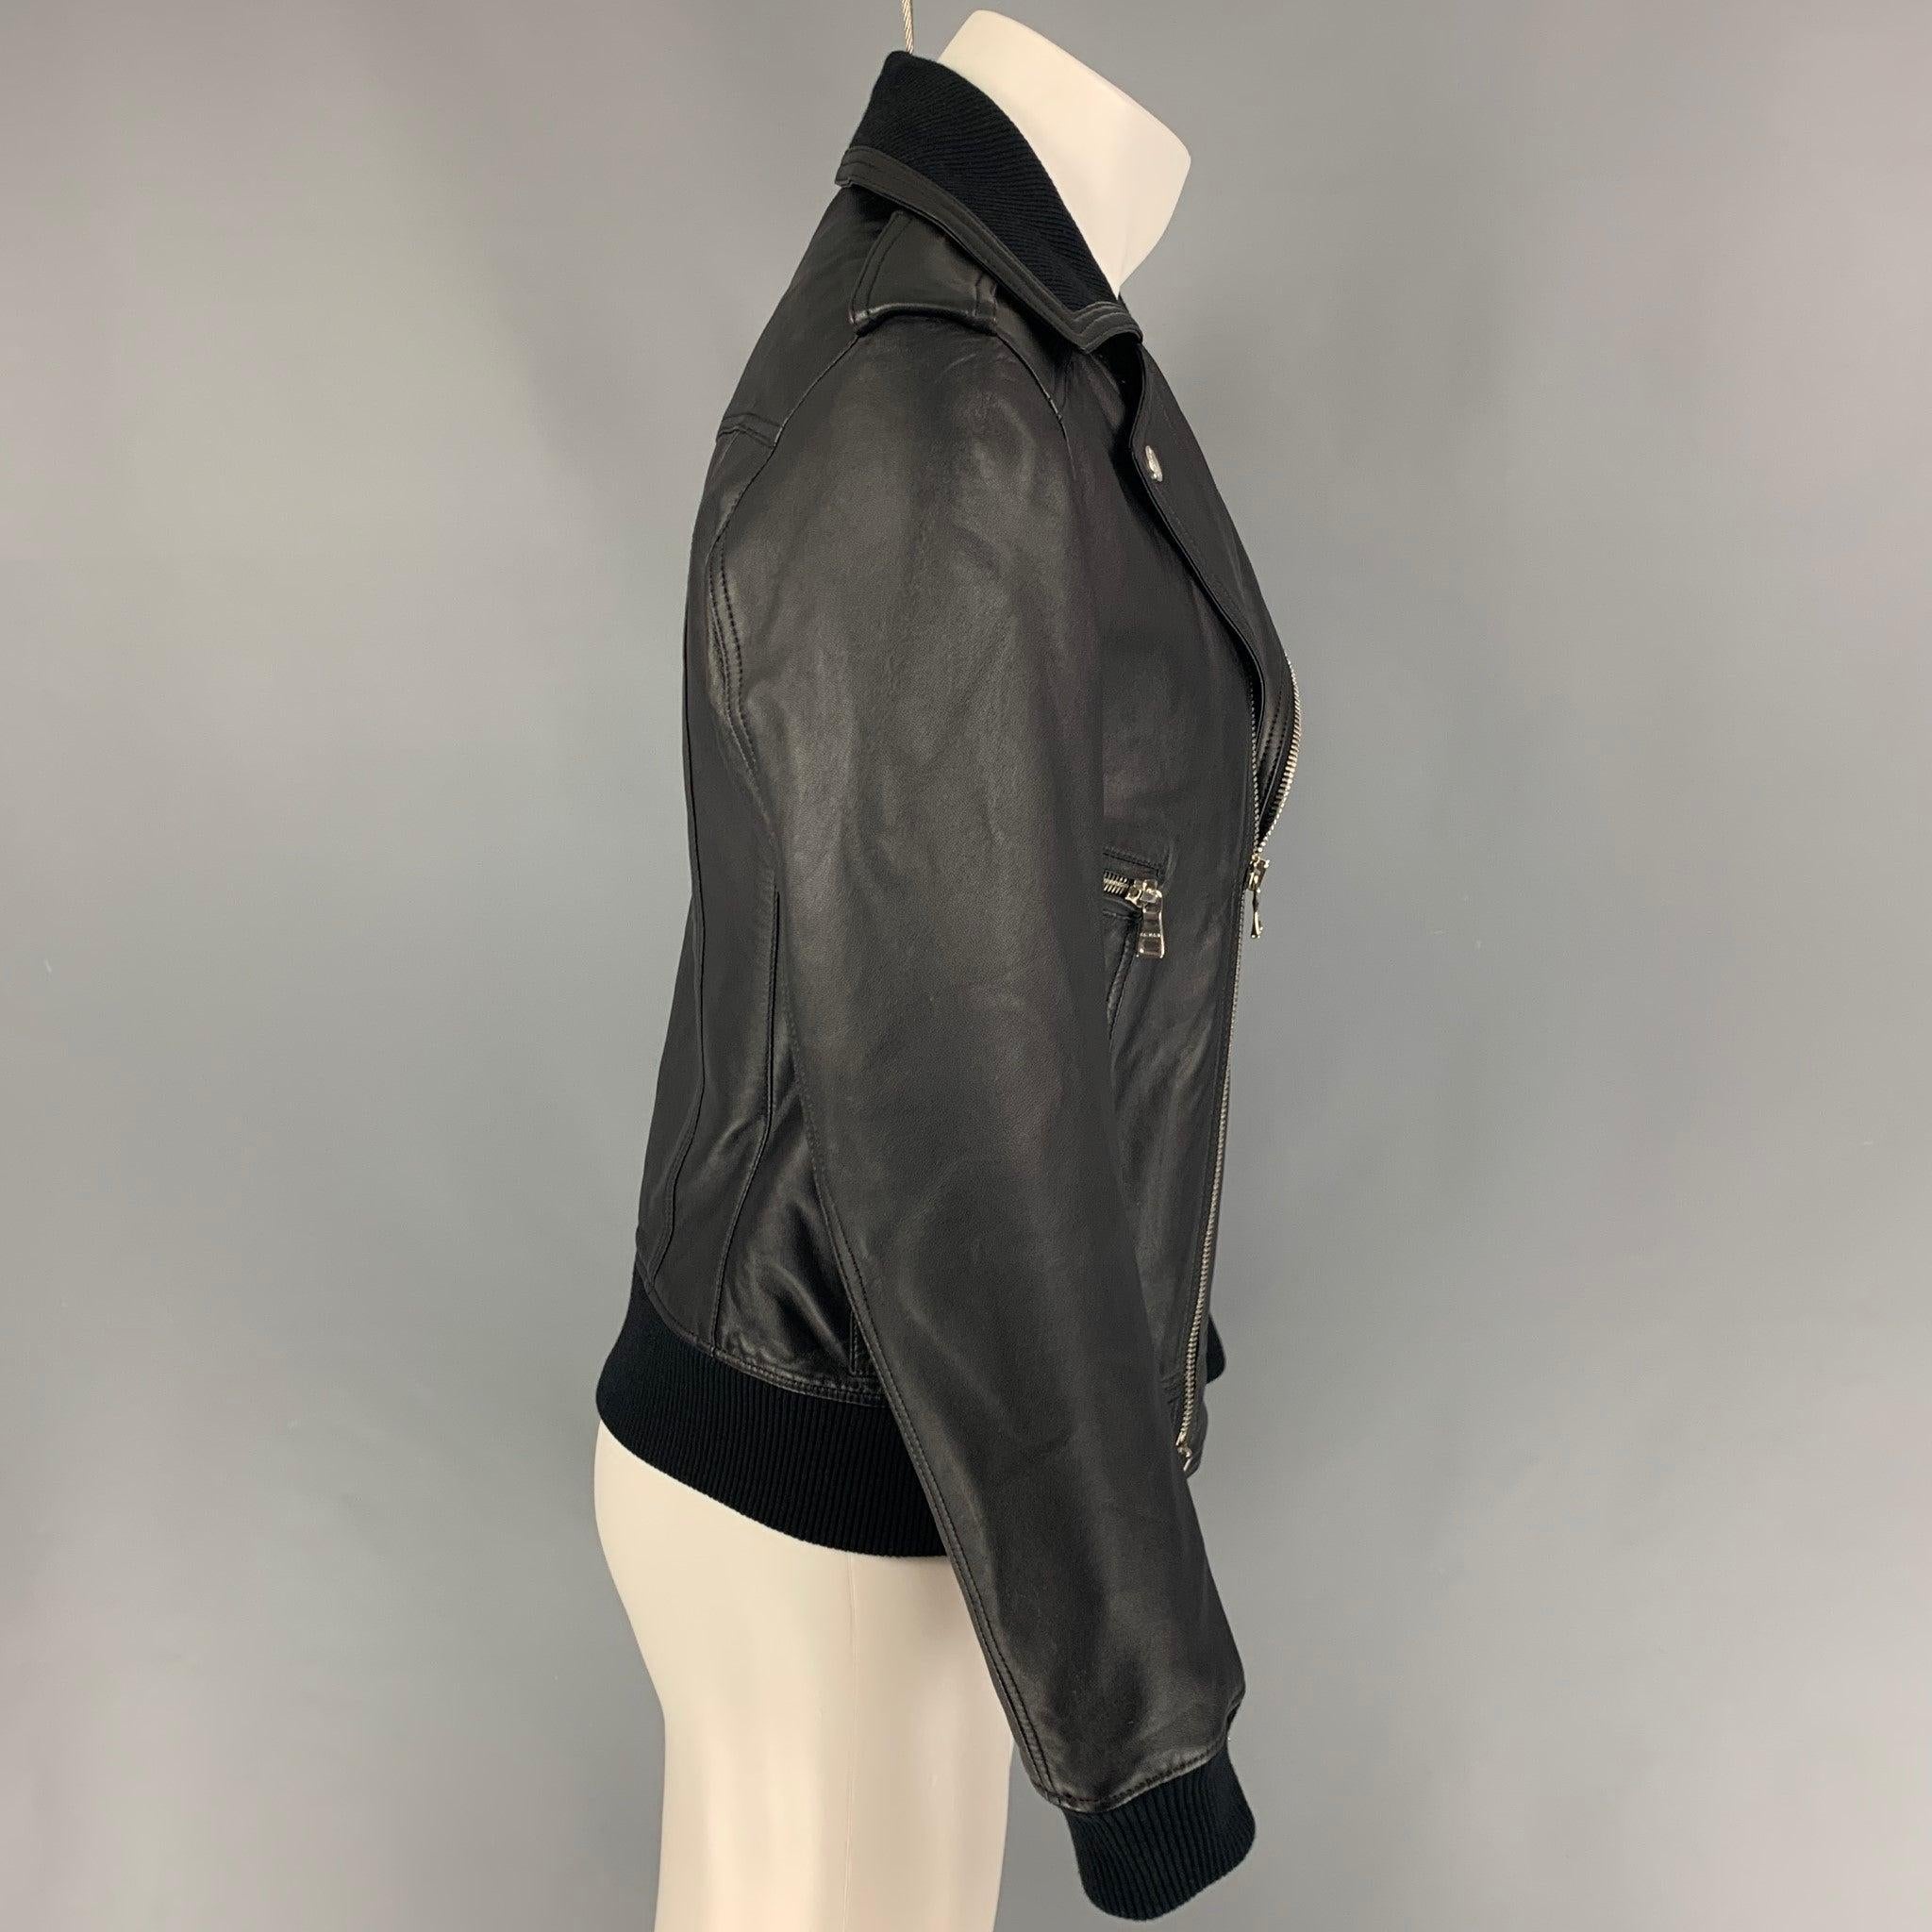 La veste BALMAIN by Olivier Rousteing est en cuir noir et présente un style moto, un ourlet côtelé, des ferrures argentées, des poches avant, des épaulettes et une fermeture à glissière intégrale.
Très bien
Etat d'occasion. 

Marqué :   48 

Mesures